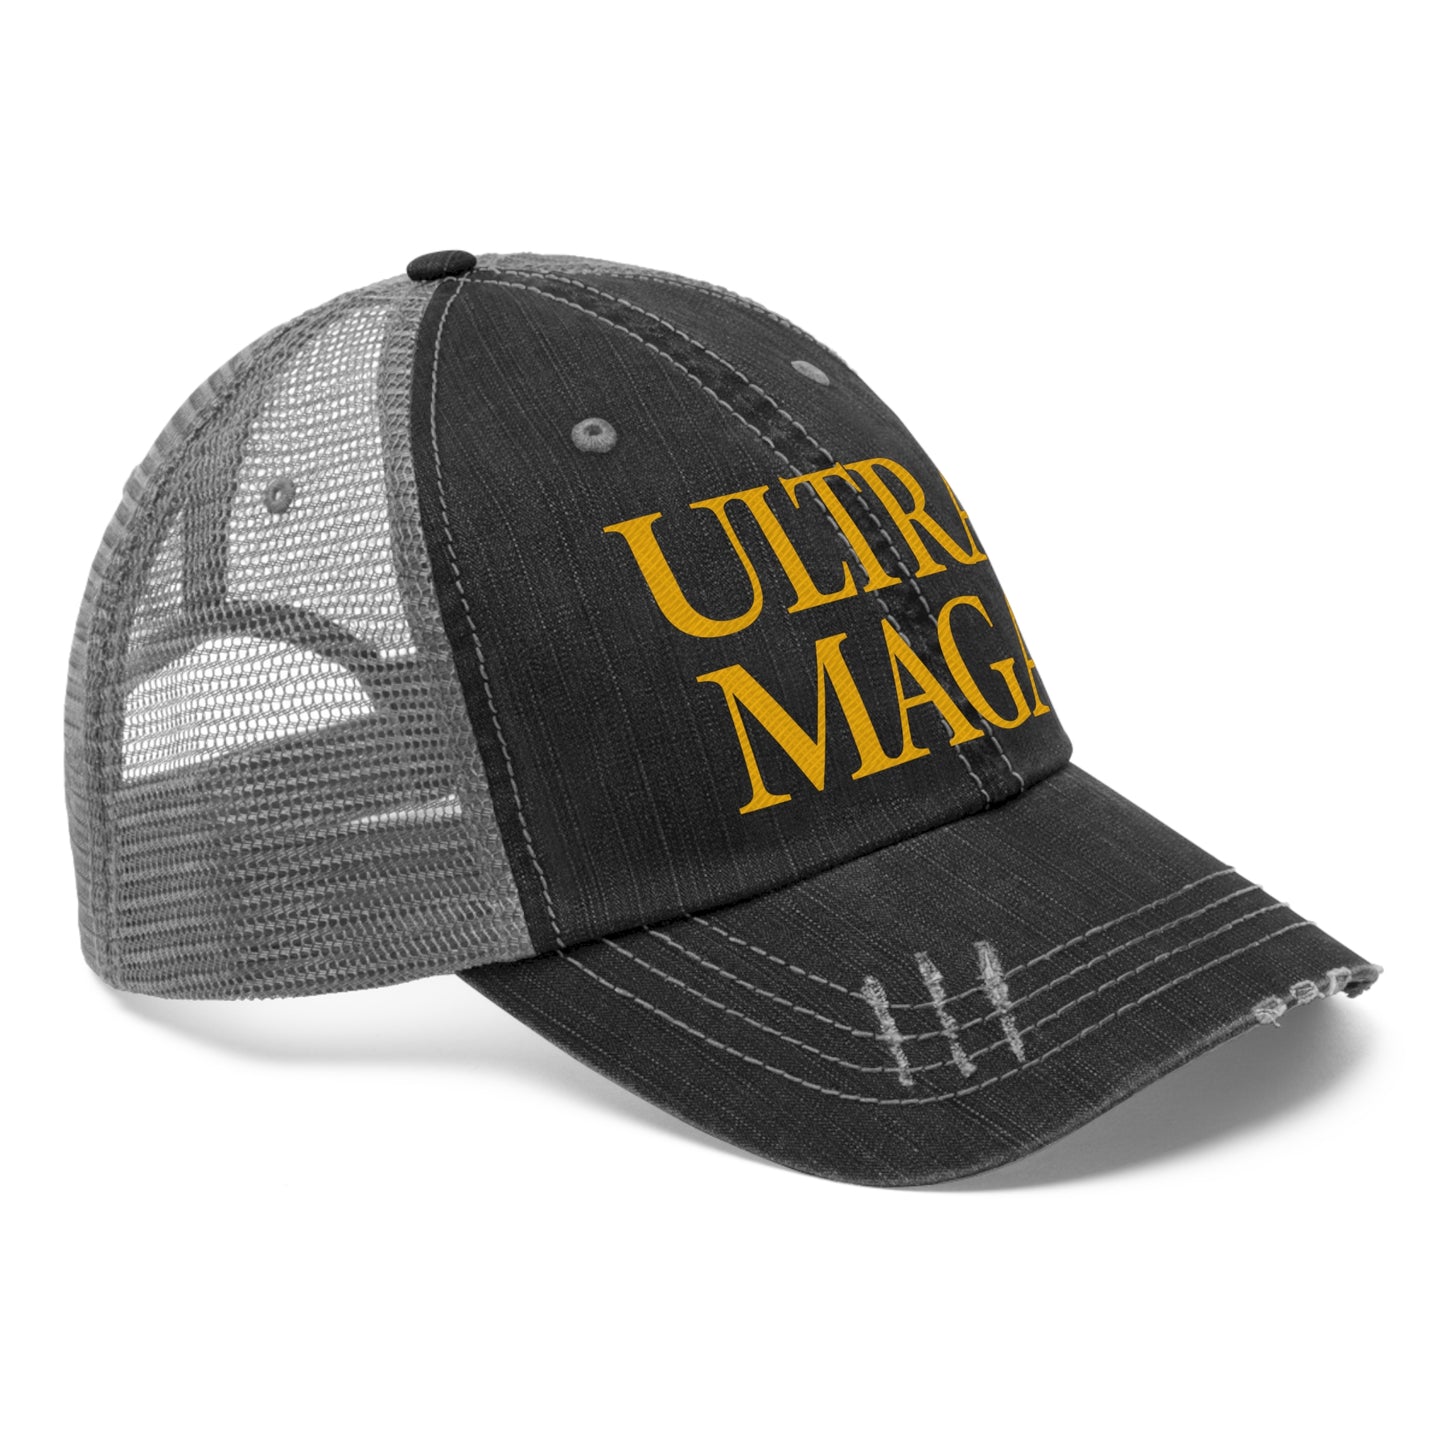 Ultra MAGA Hat